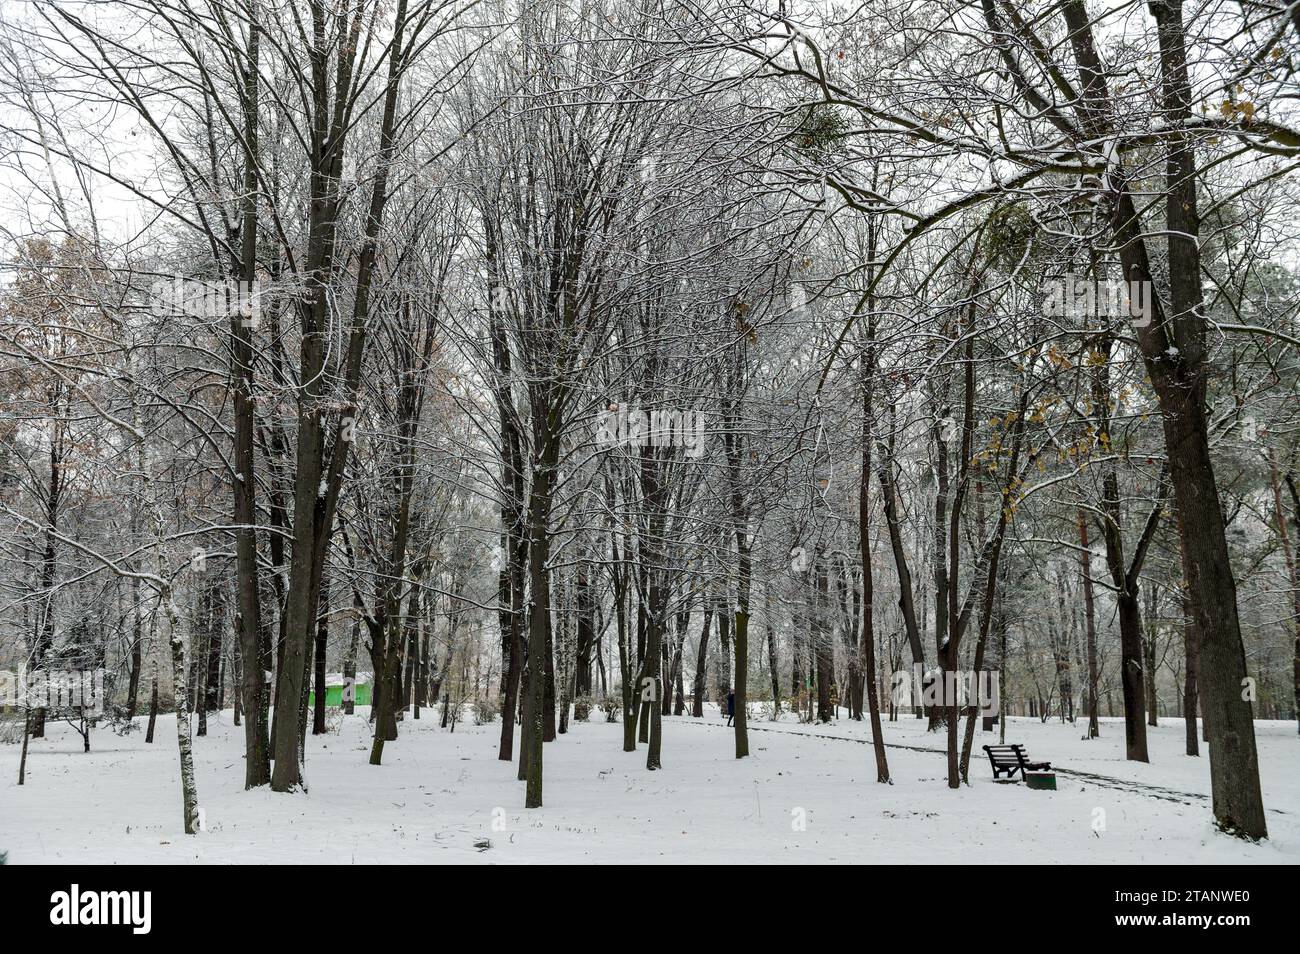 Rama de árbol cubierta de nieve. Paisaje de invierno en el bosque de abeto cubierto de nieve. Parque nevado de invierno Foto de stock